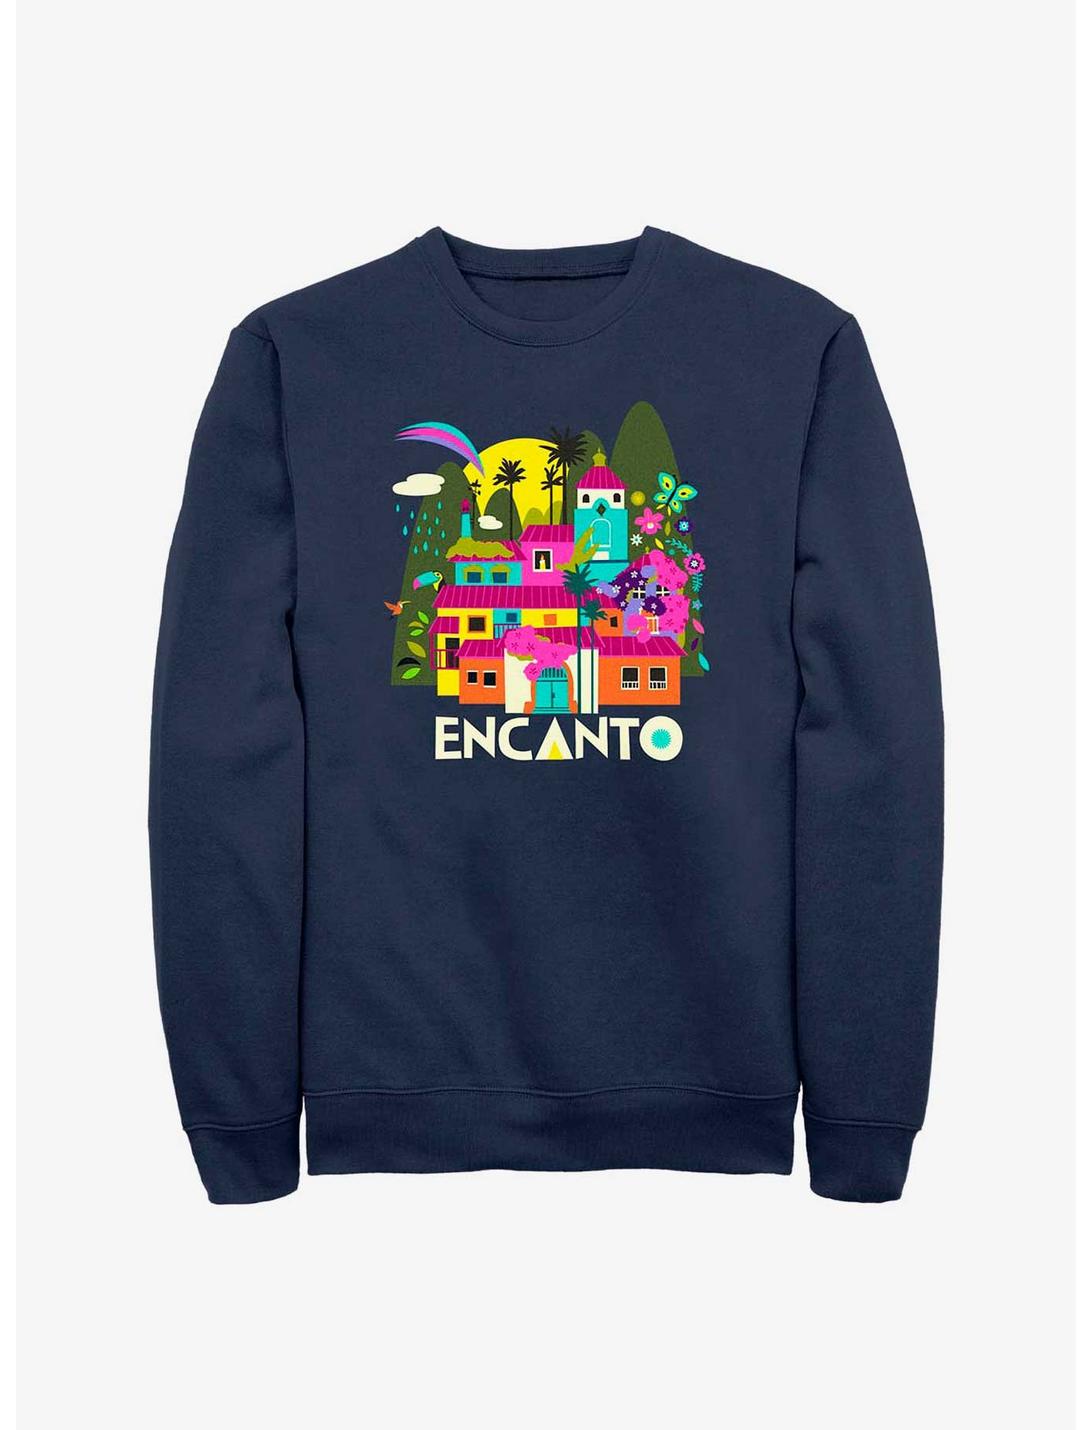 Disney Encanto Gold Sweatshirt, NAVY, hi-res